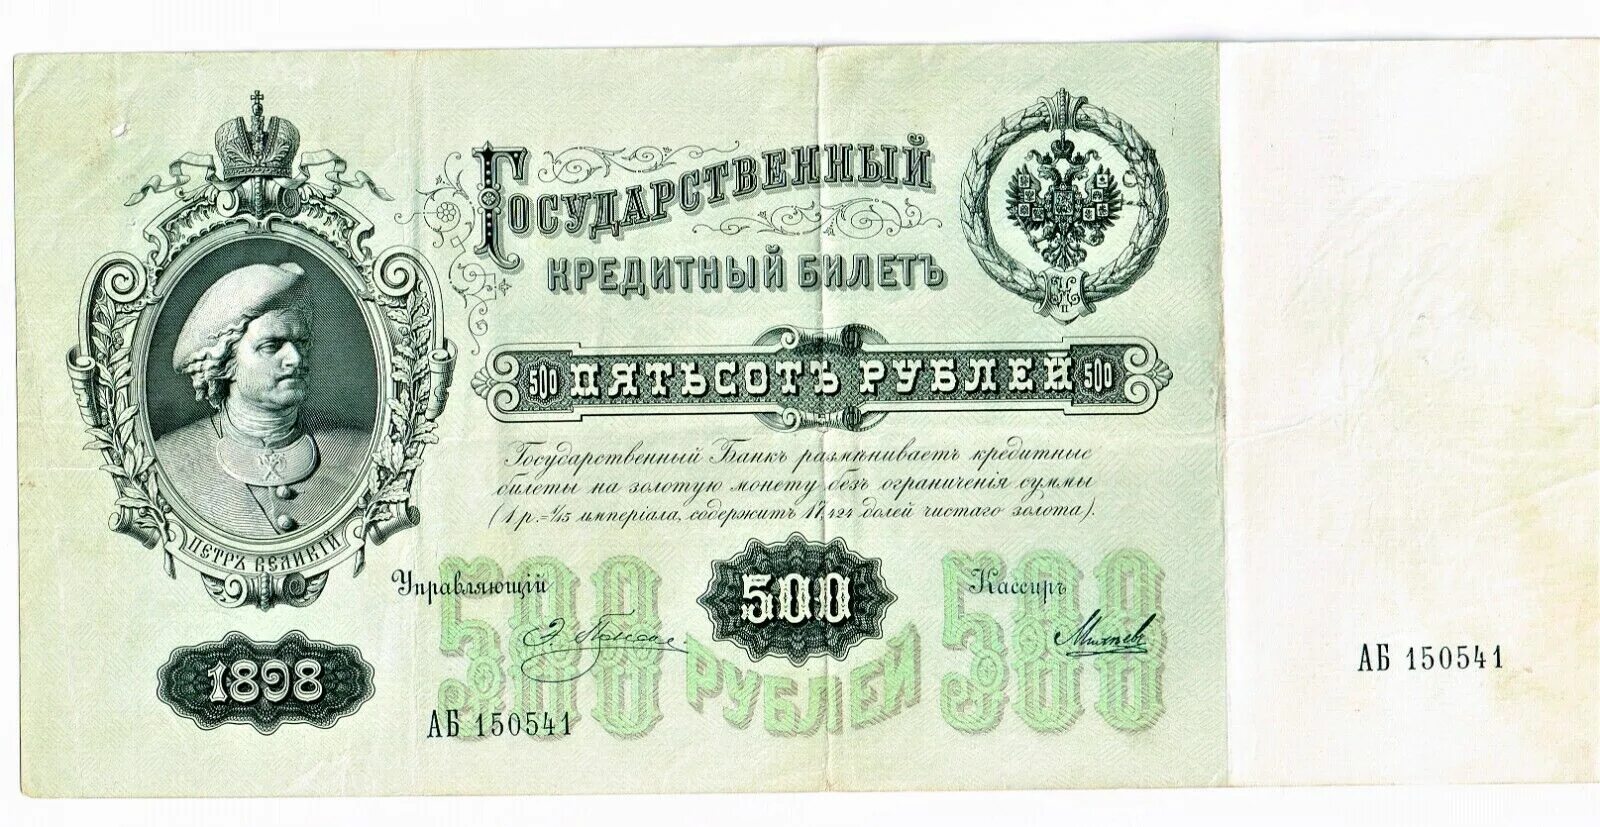 19 500 в рублях. 100 Рублей 1898 года Тимашев. Купюры Российской империи 100 рублей 1898.